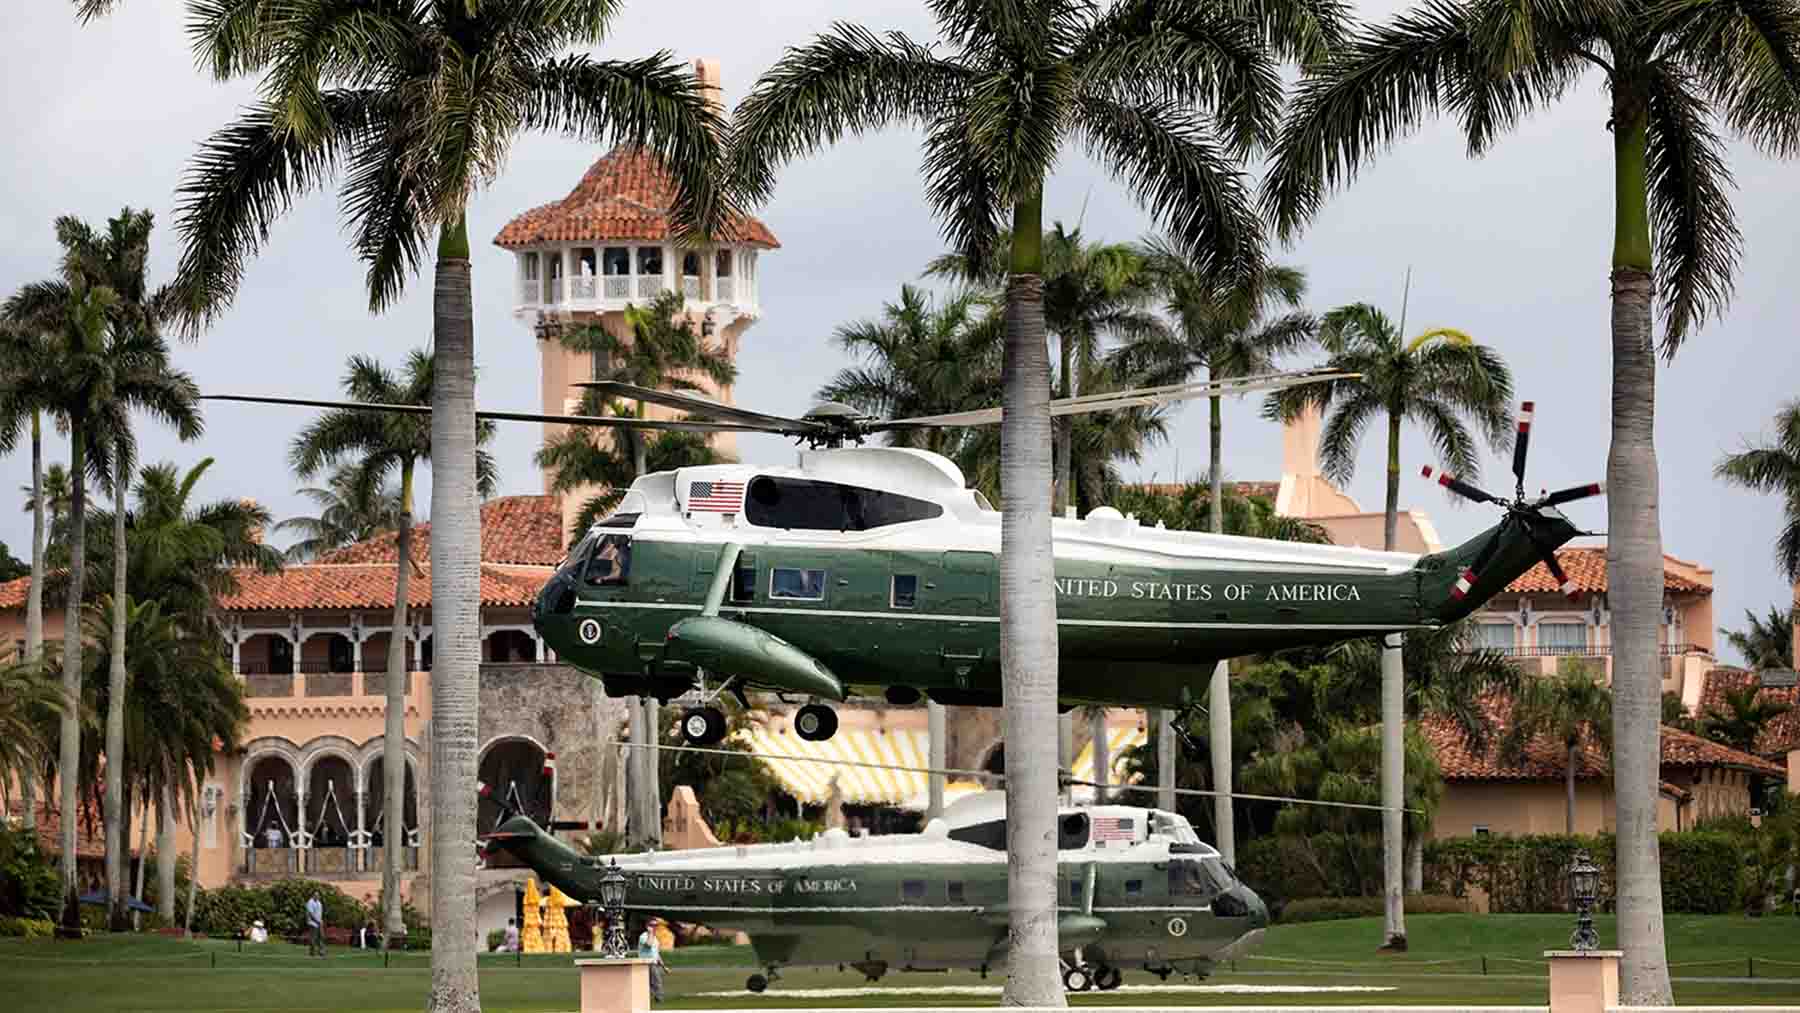 El expresidente Donald Trump a bordo del Marine One aterriza en Mar-a-Lago